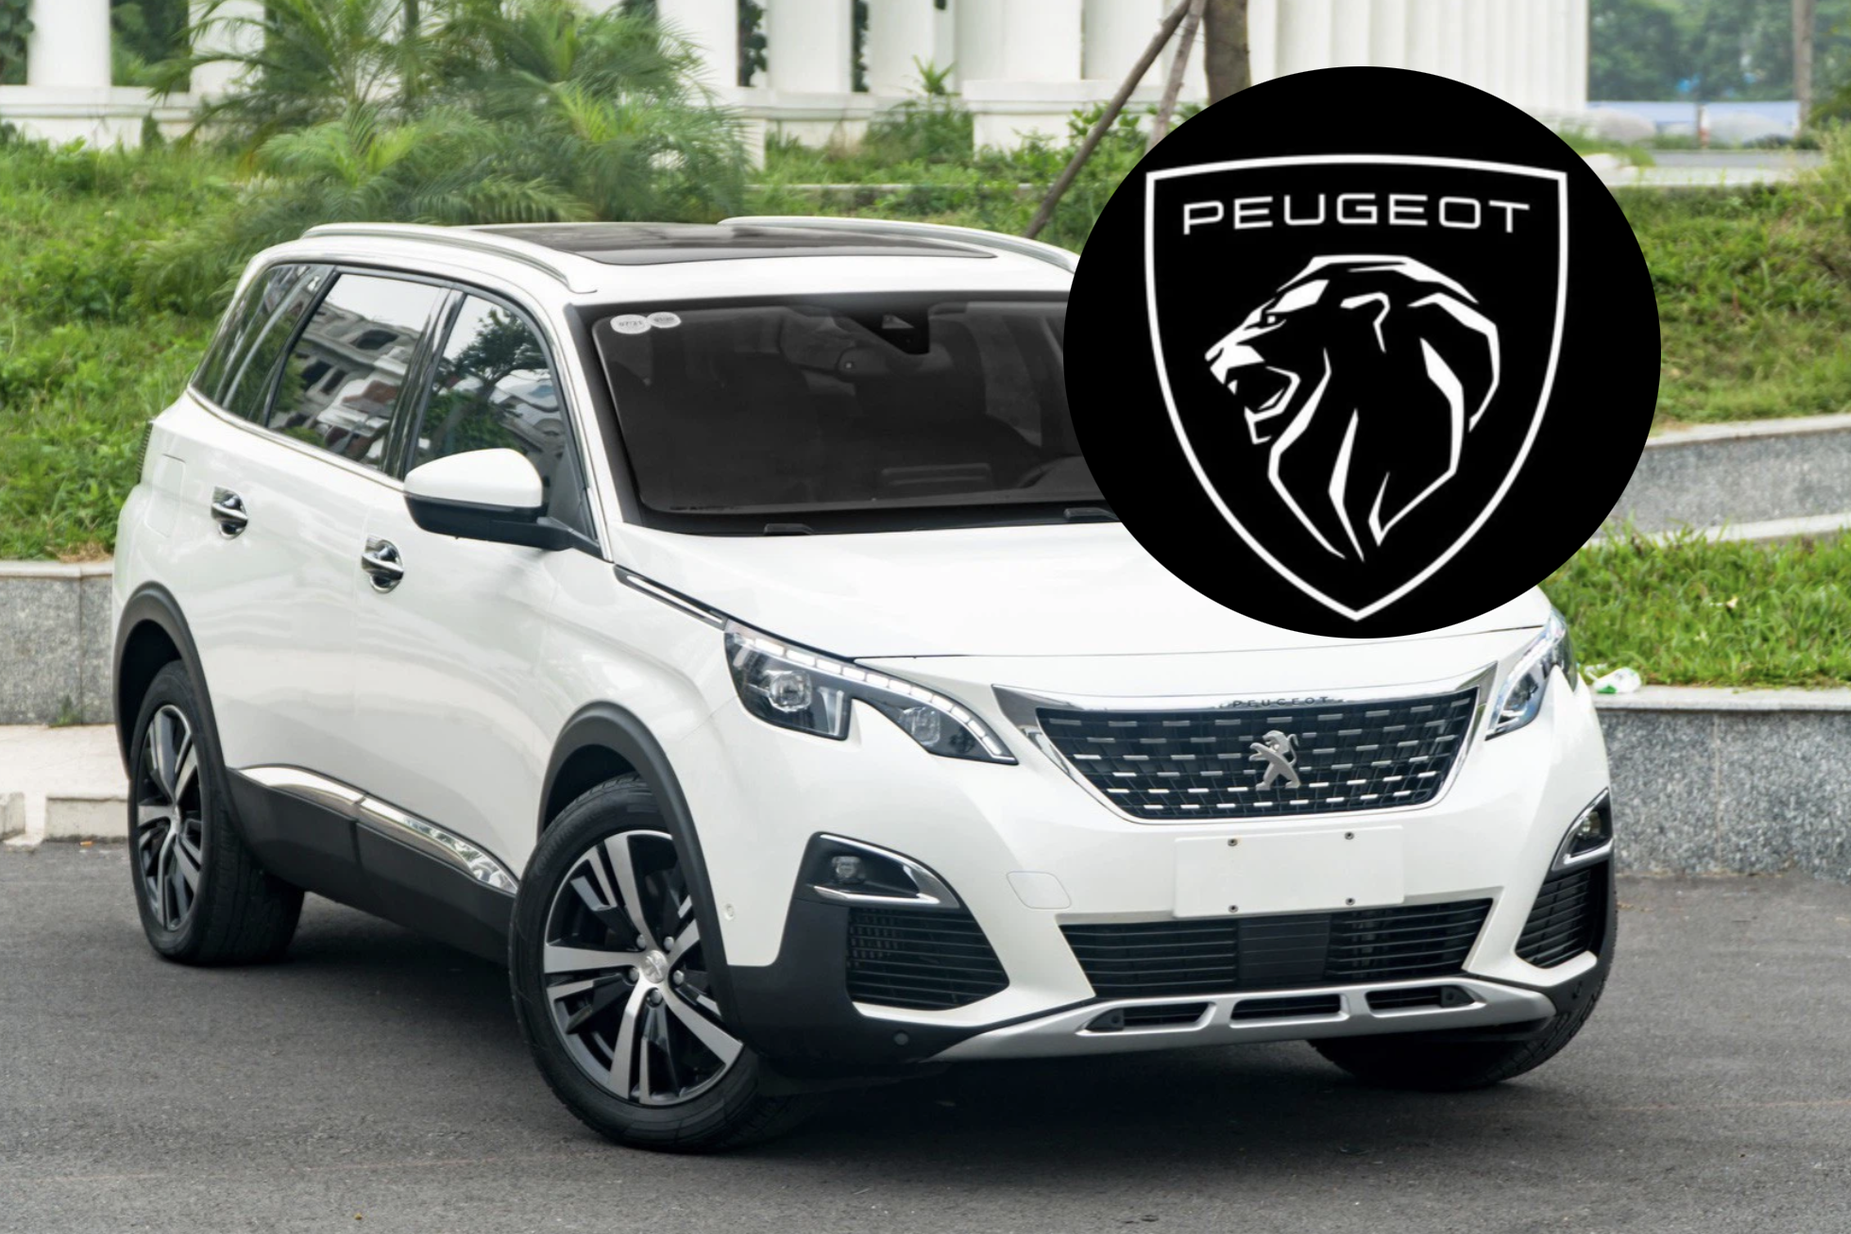 Hội chủ xe Peugeot Việt Nam có lẽ sẽ muốn đổi logo trong thời gian tới vì lý do sau